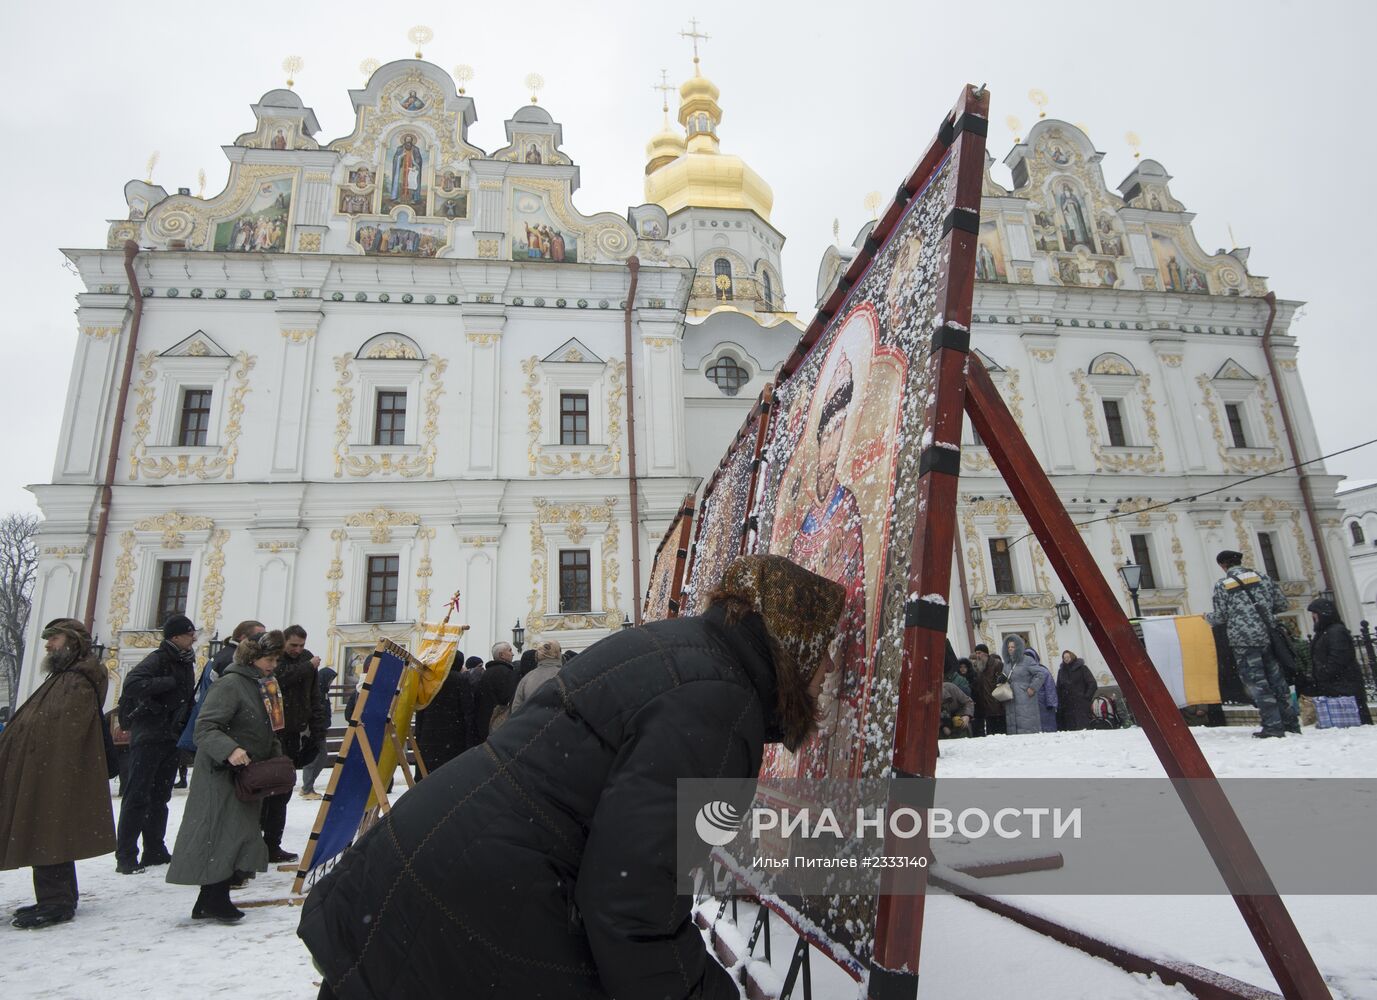 Крестный ход под лозунгом "Украина, Россия, Беларусь - вместе Святая Русь!" в Киеве